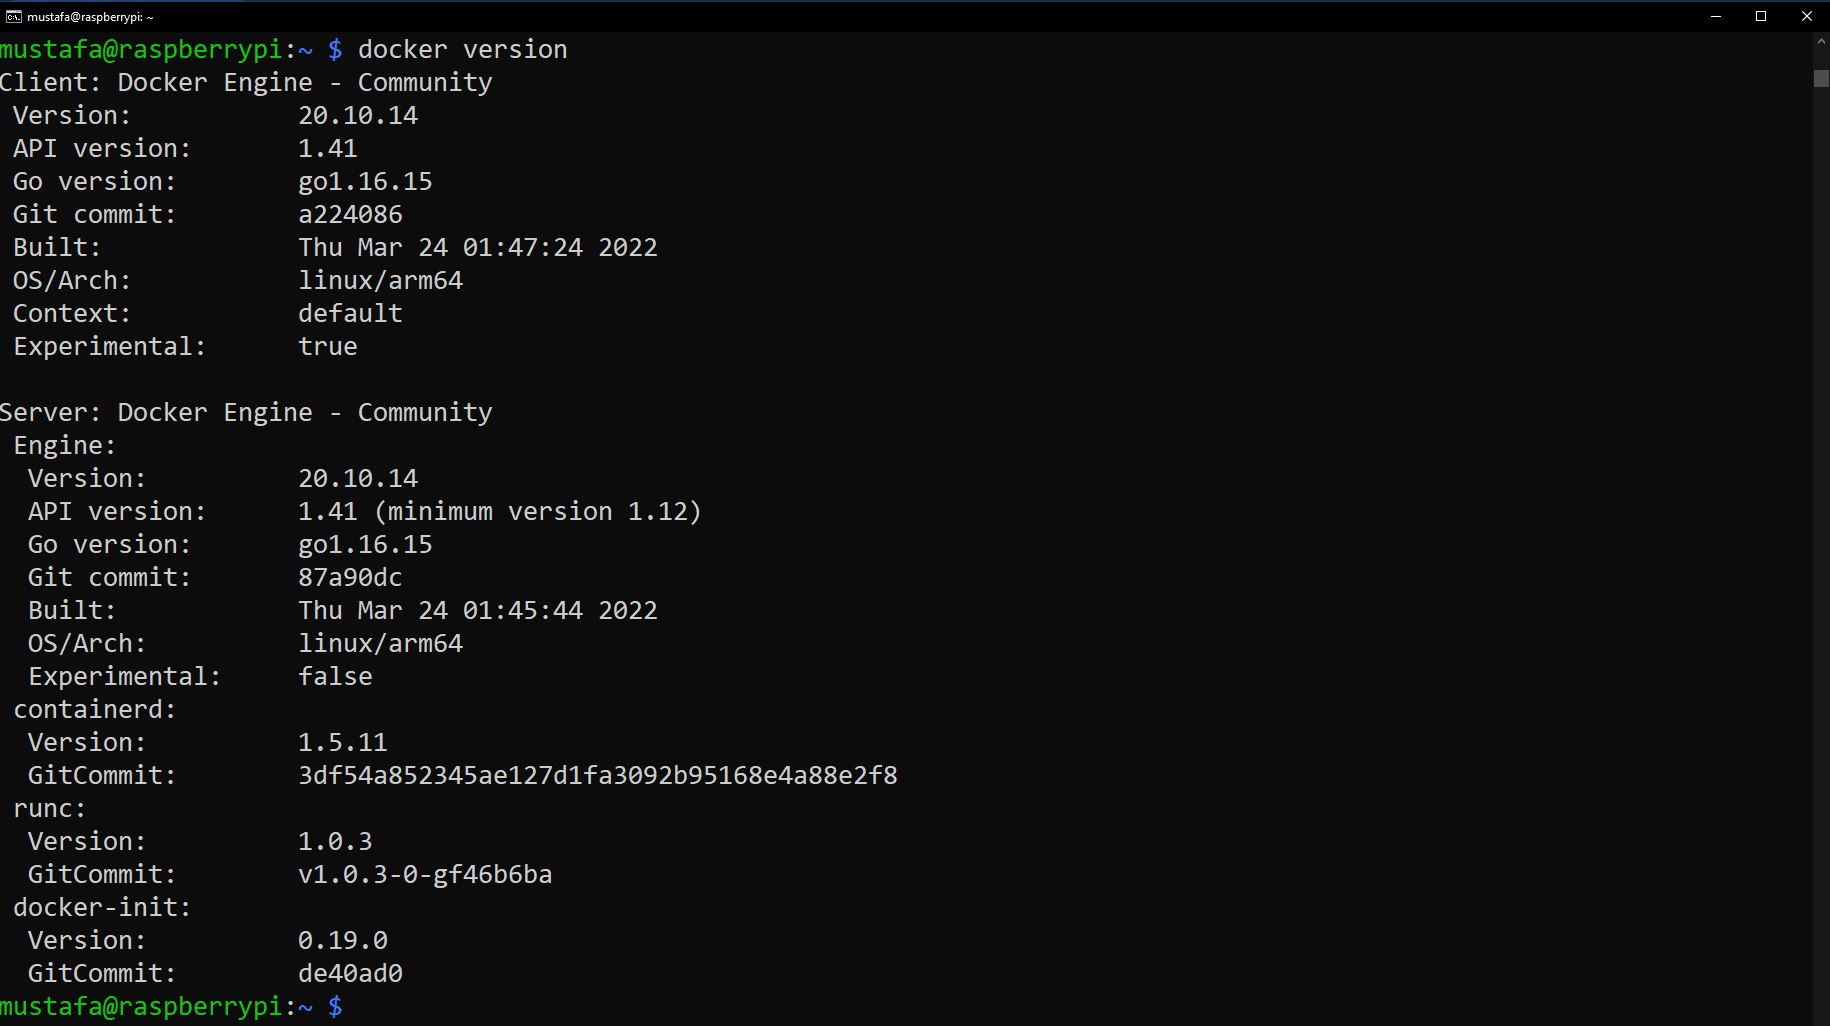 verify docker installation on Raspberry Pi